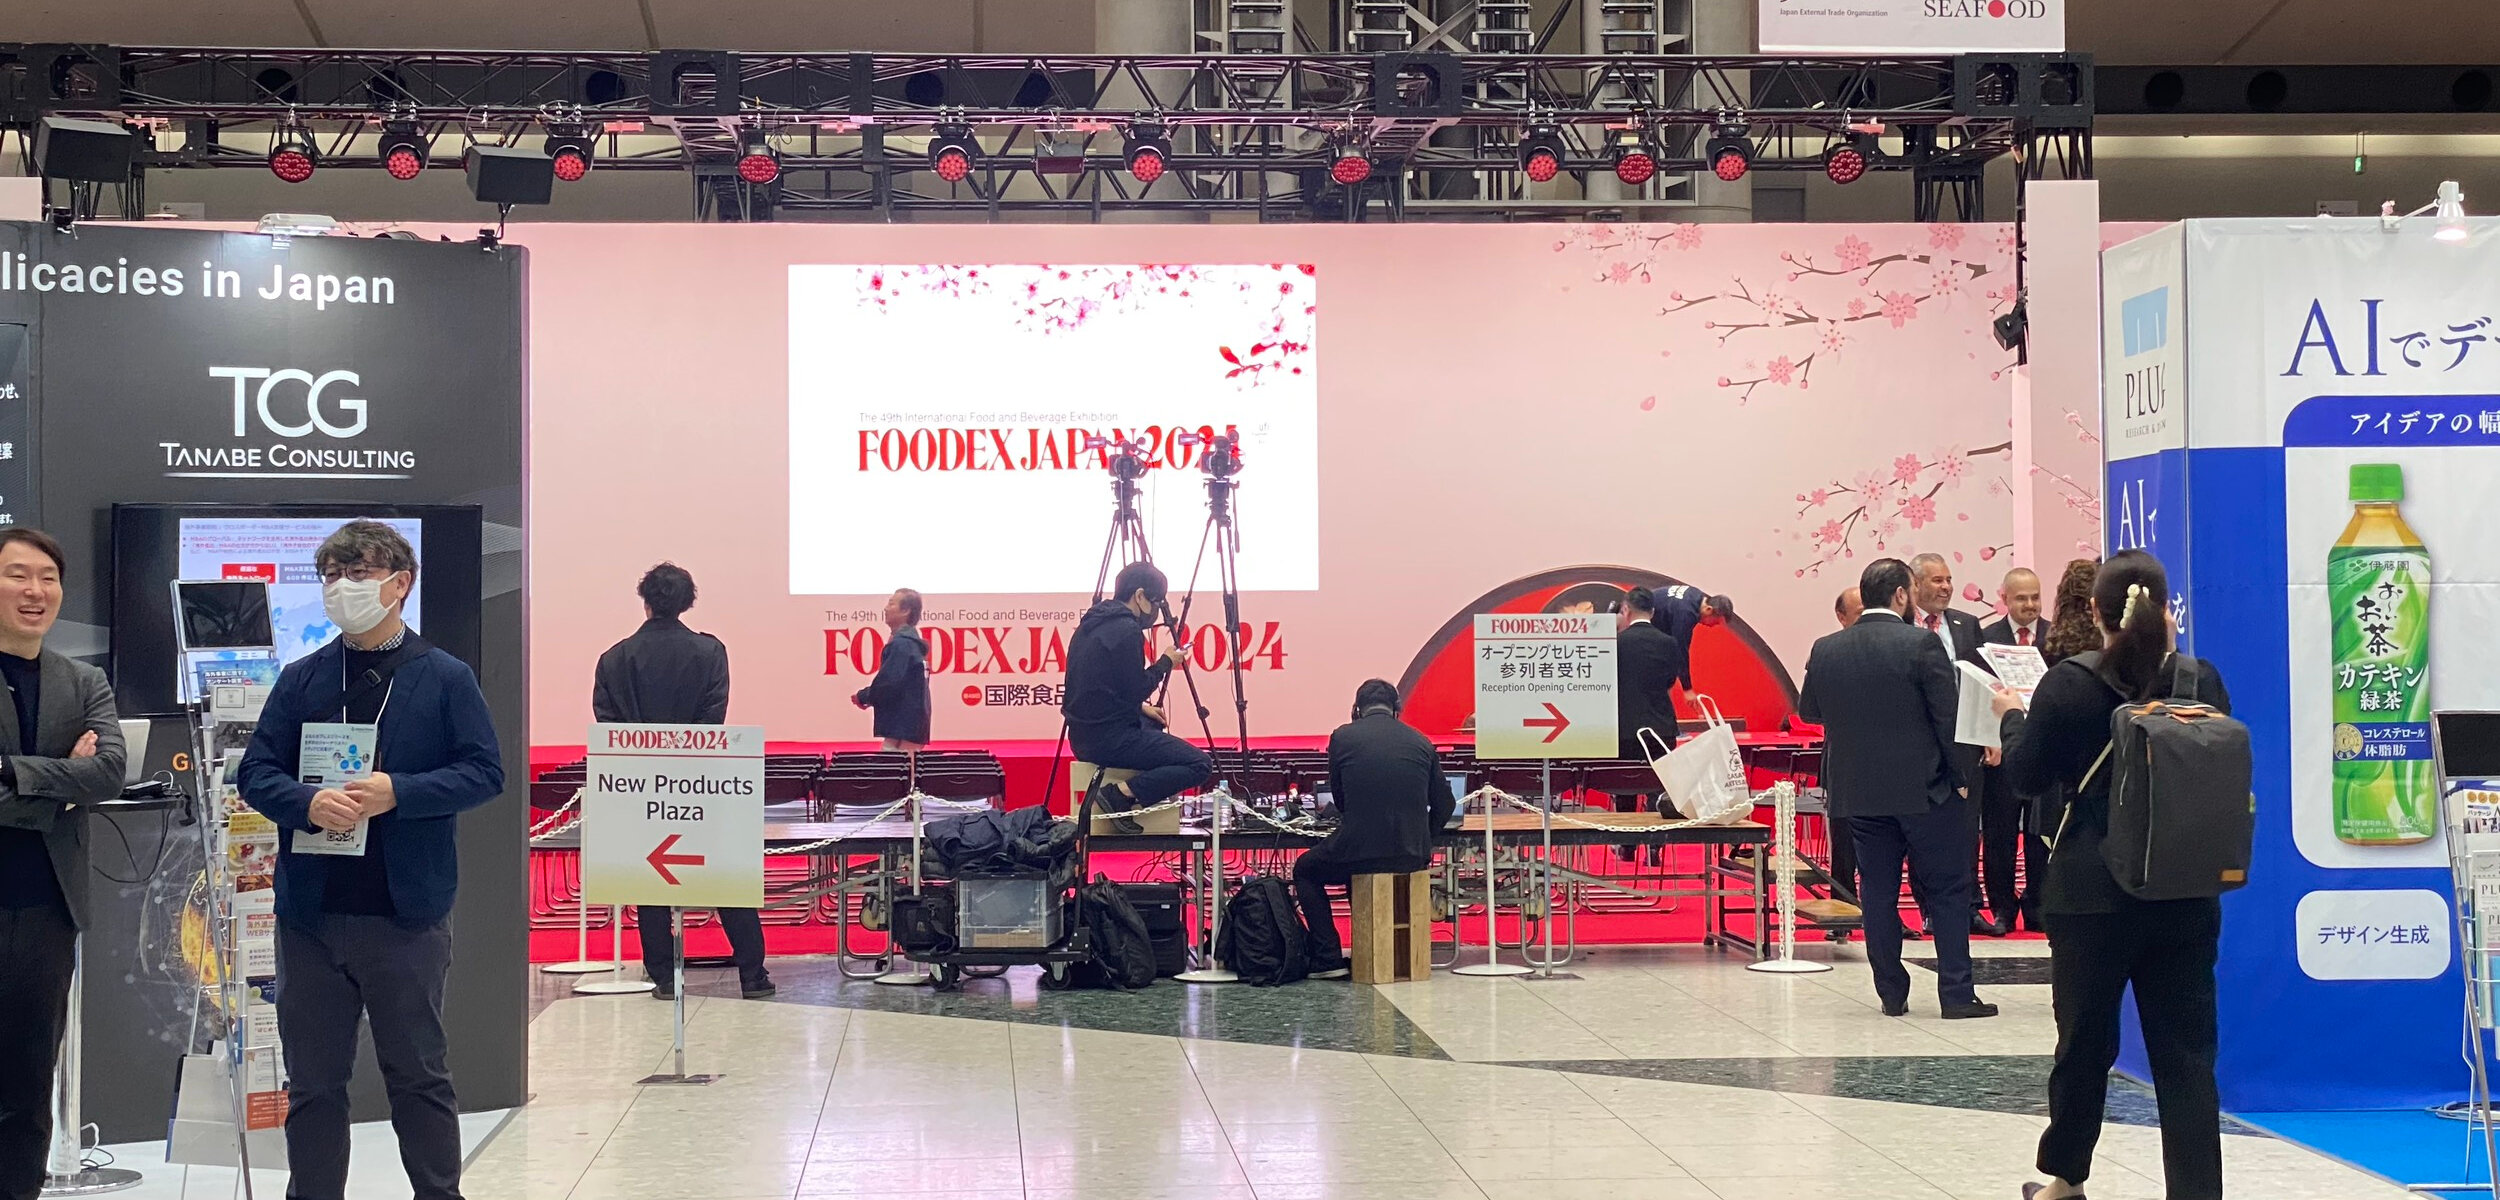 FOODEX JAPAN 2024